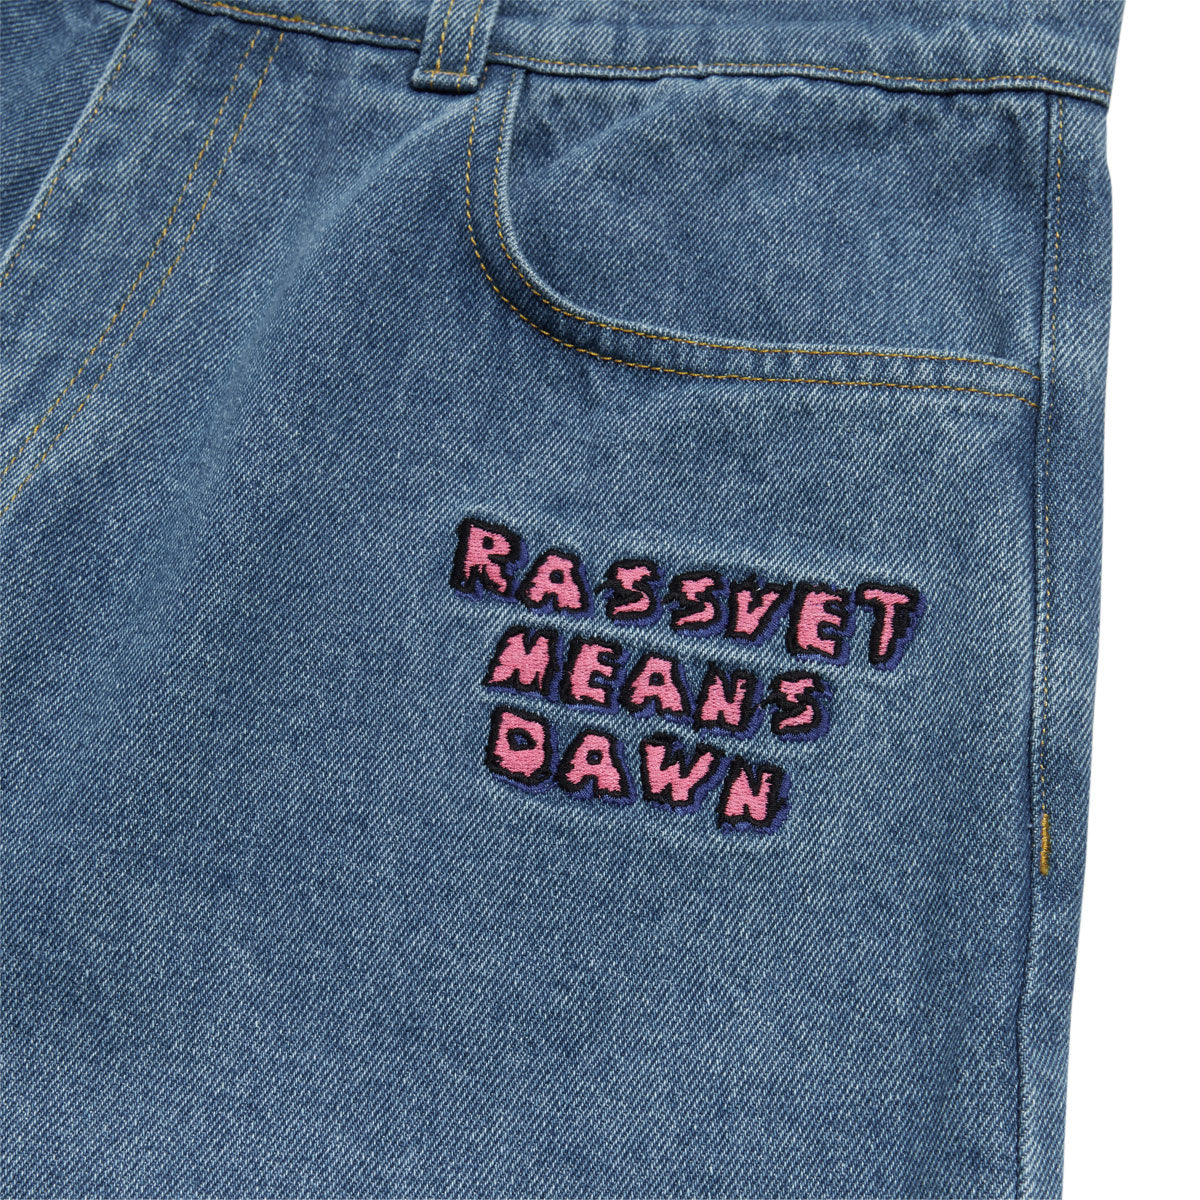 Rassvet R.M.D Baggy Trousers Pants - Light Blue image 3